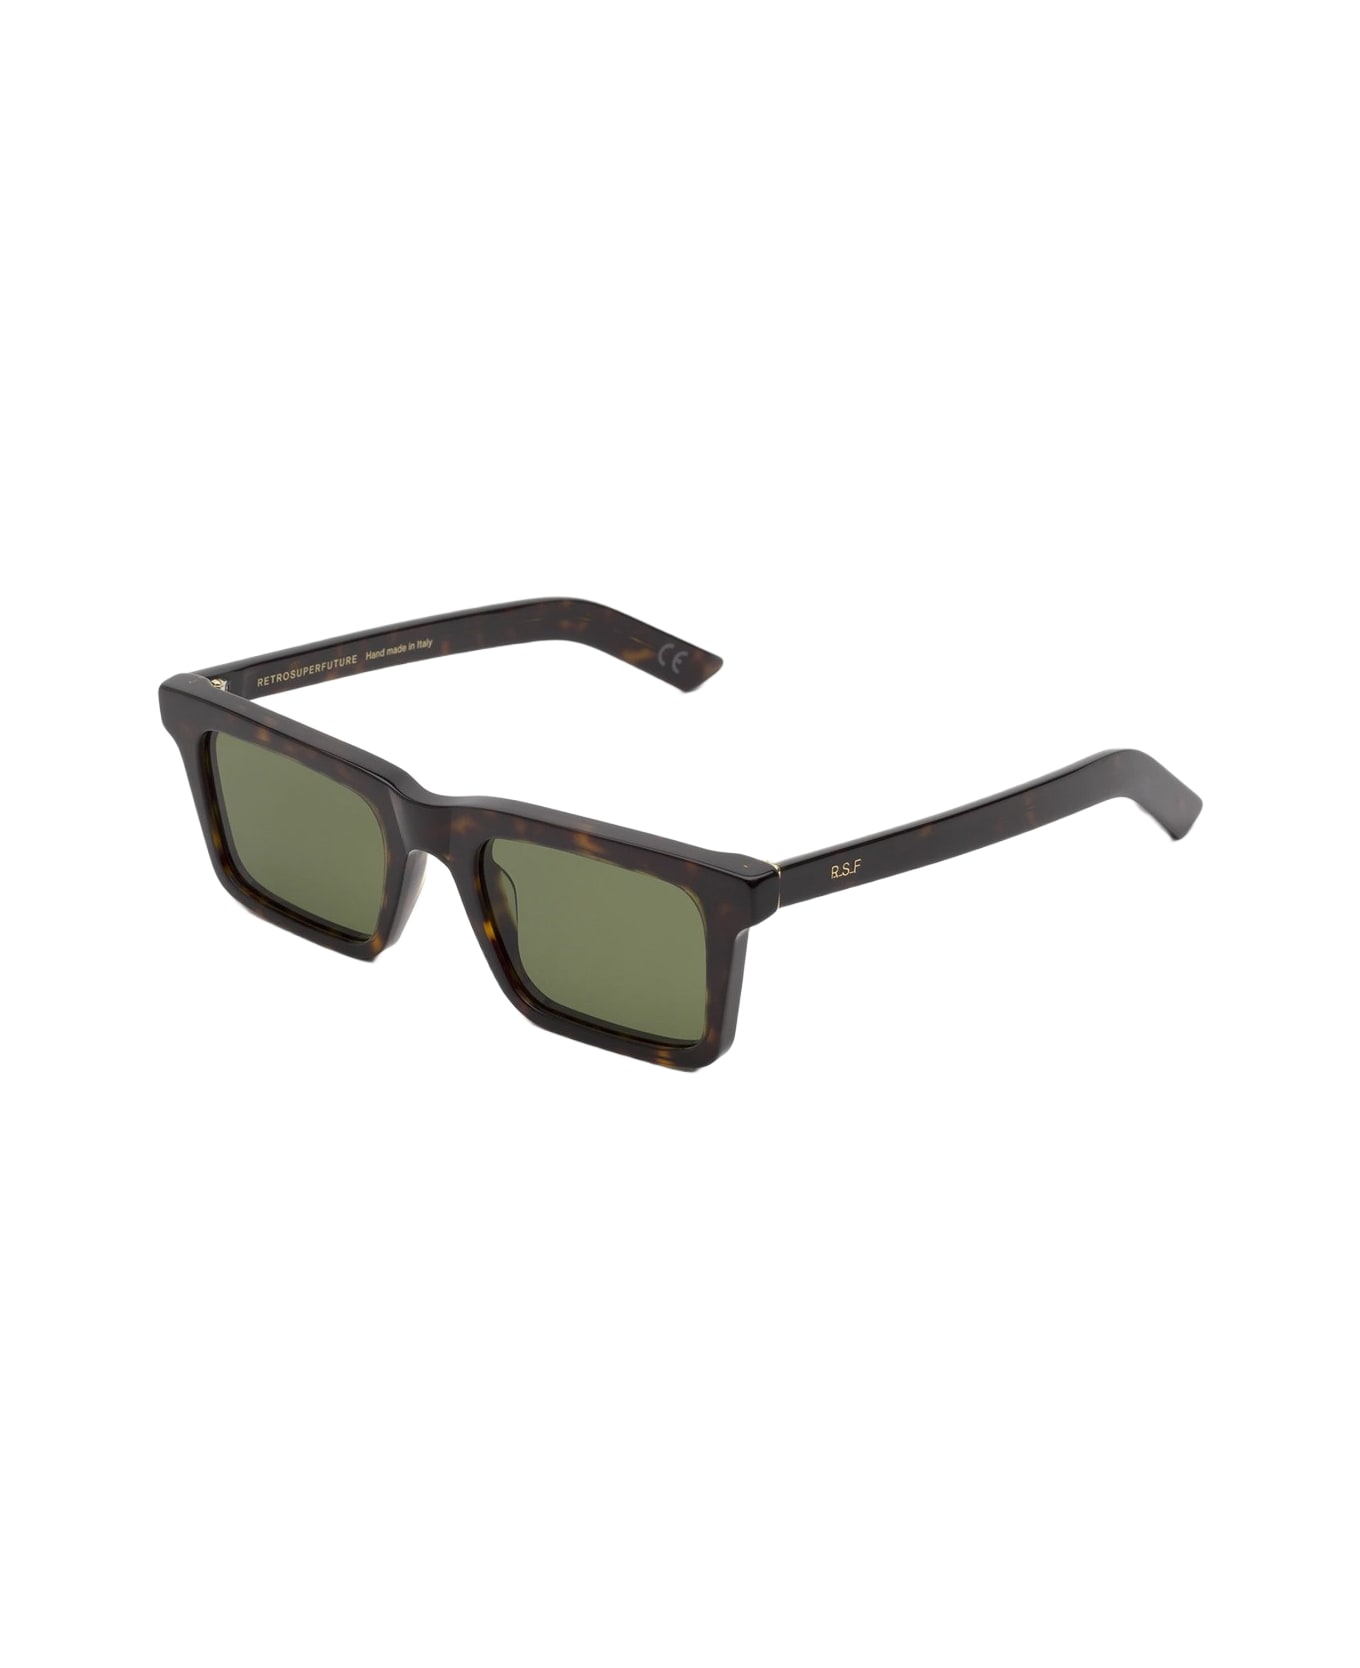 RETROSUPERFUTURE Super 1968 3627 Sunglasses - Marrone